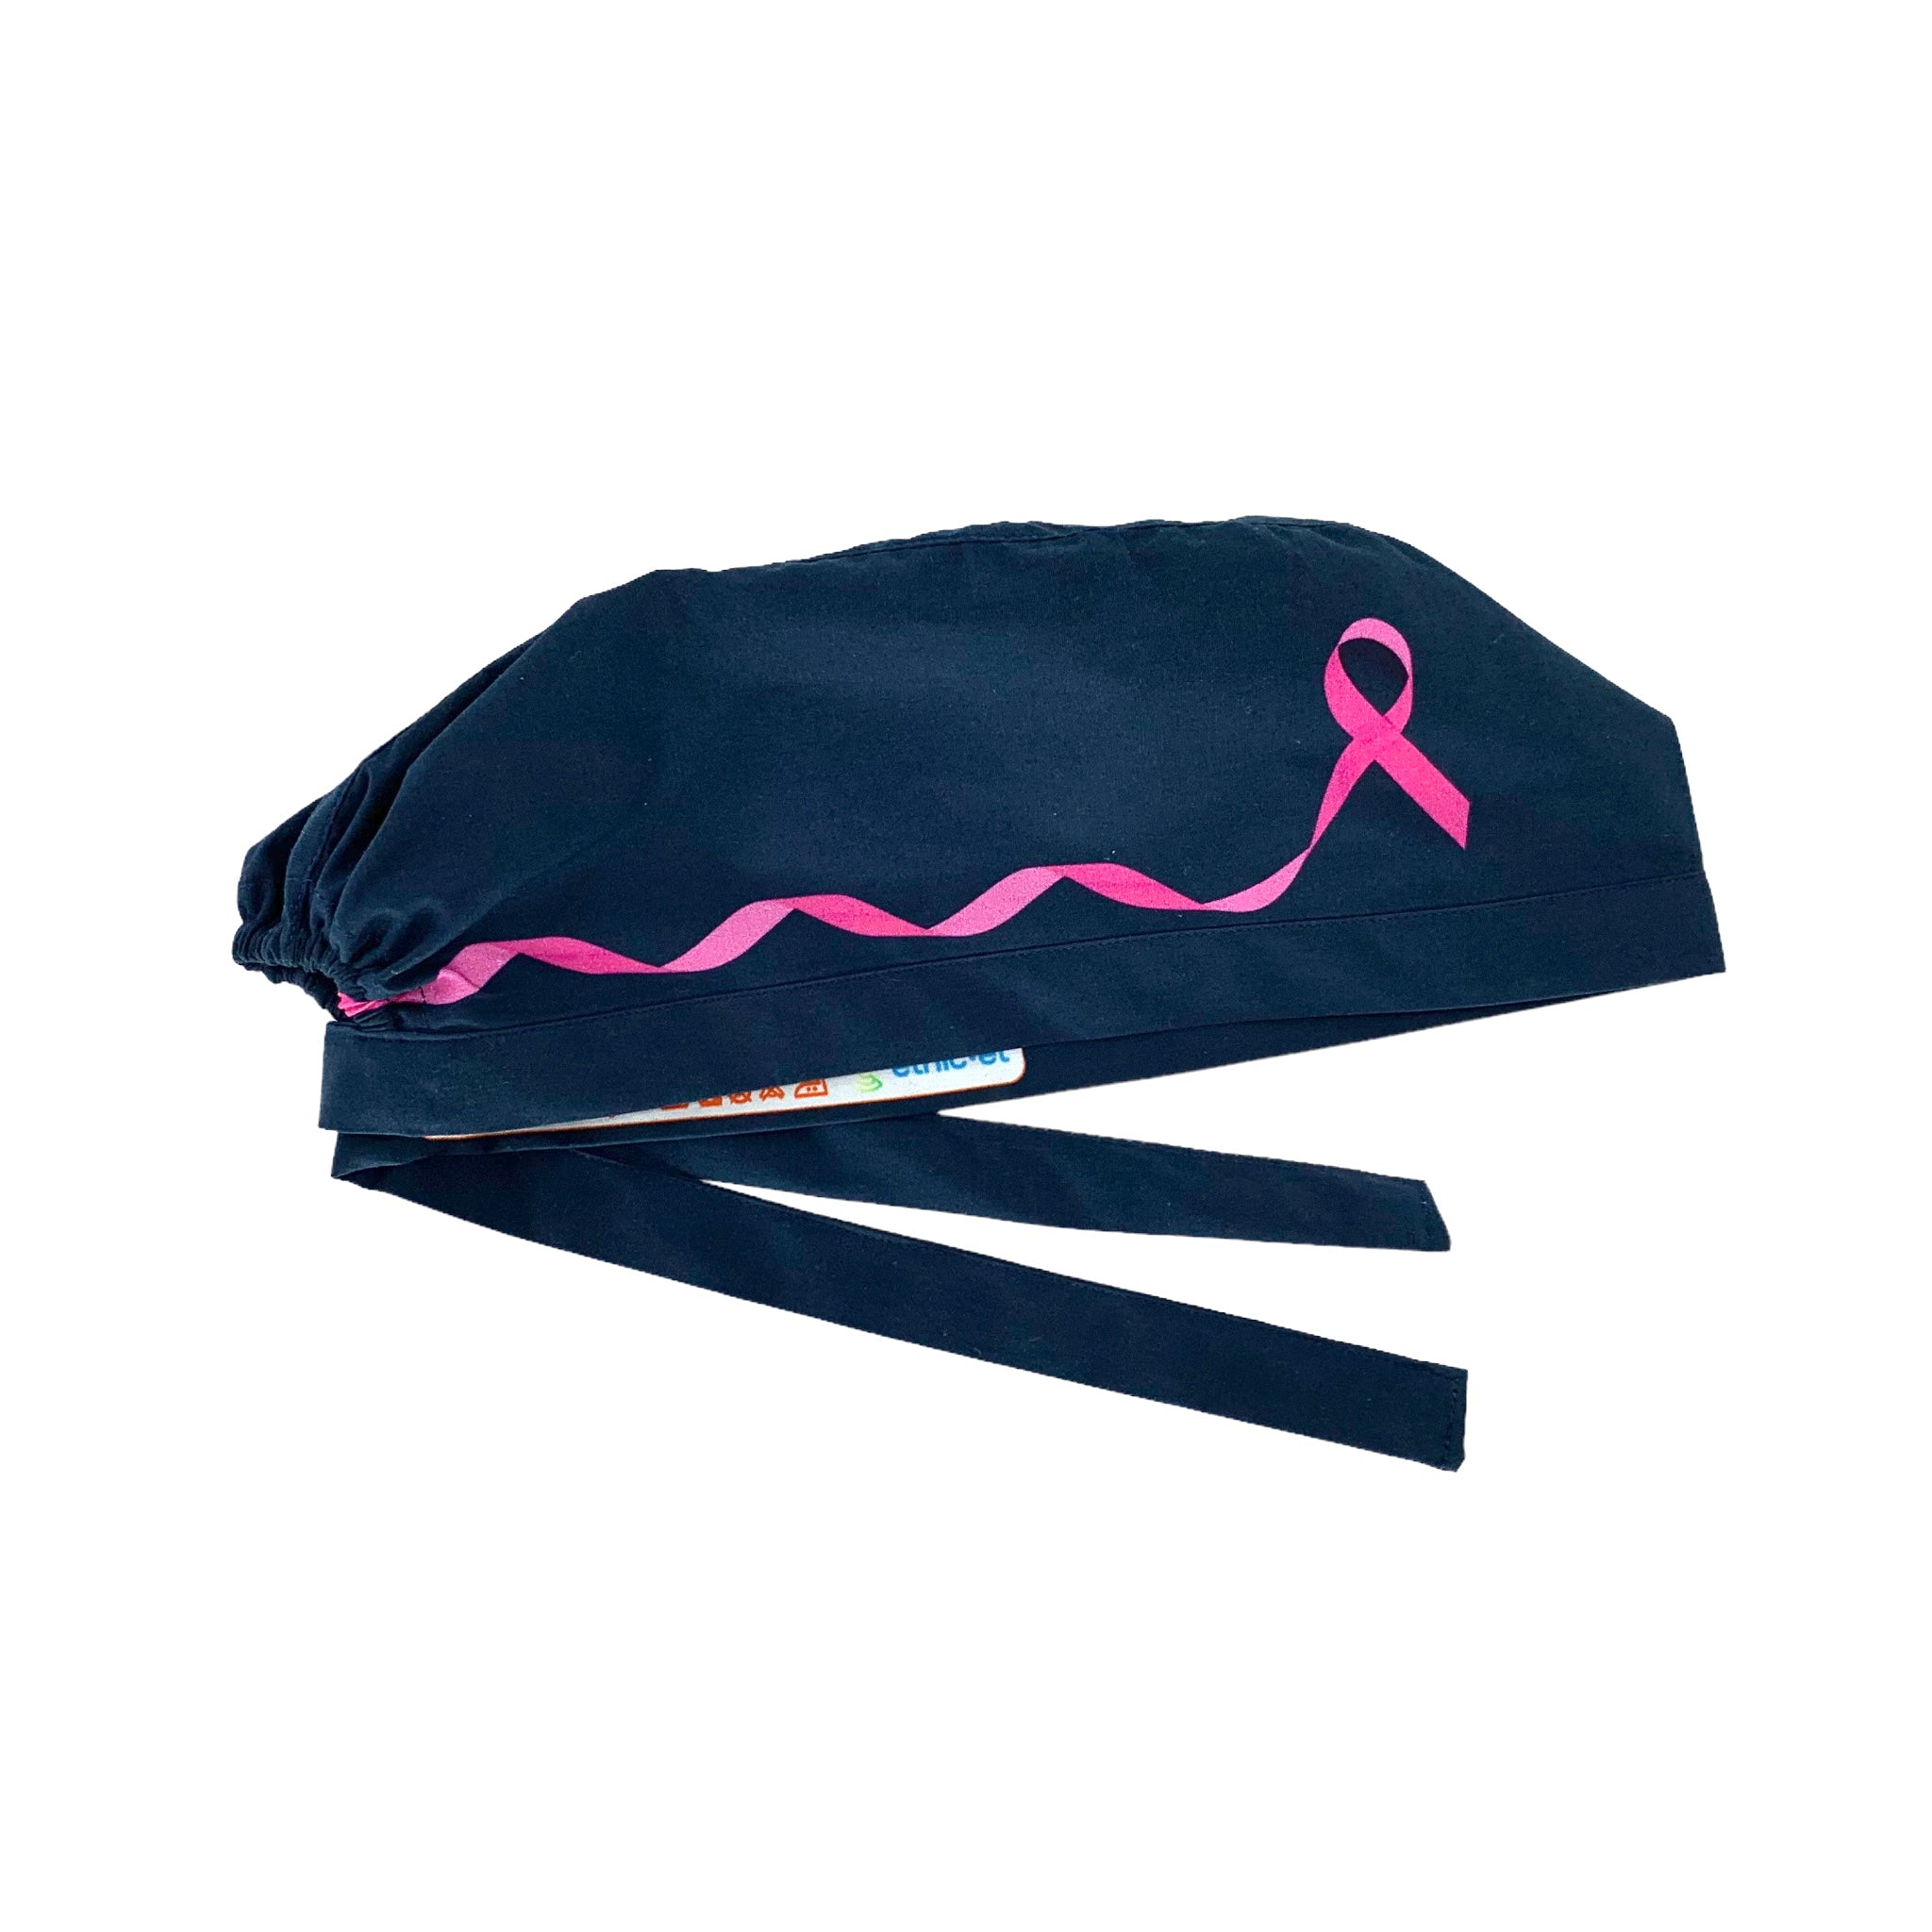 Cuffietta chirurgica blu scuro con fiocco rosa su entrambi i lati, simbolo di lotta e impegno contro il cancro al seno